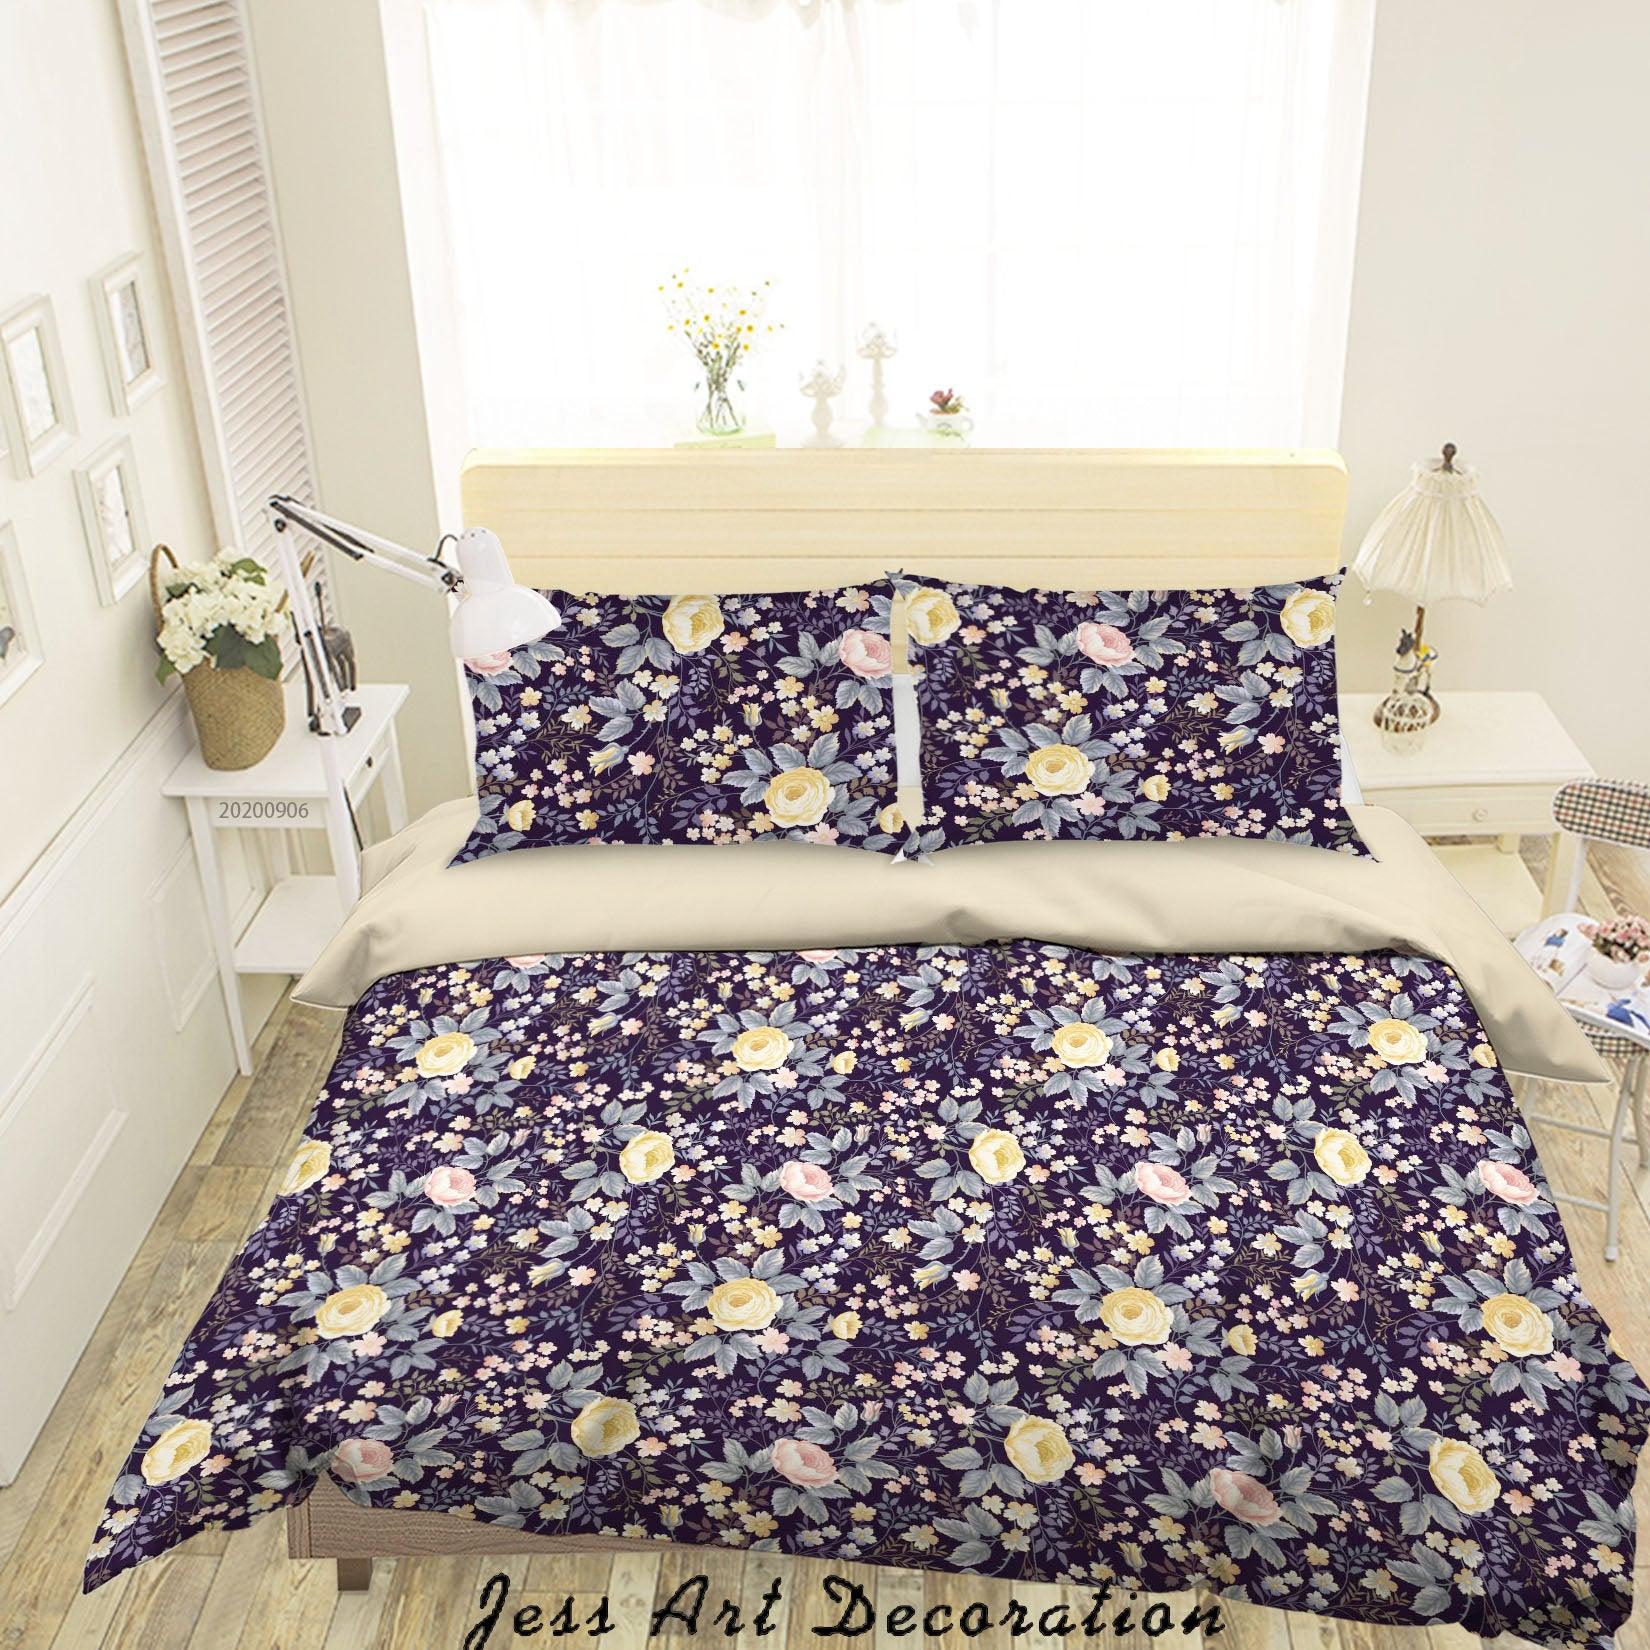 3D Vintage Leaves Floral Pattern Quilt Cover Set Bedding Set Duvet Cover Pillowcases WJ 3620- Jess Art Decoration